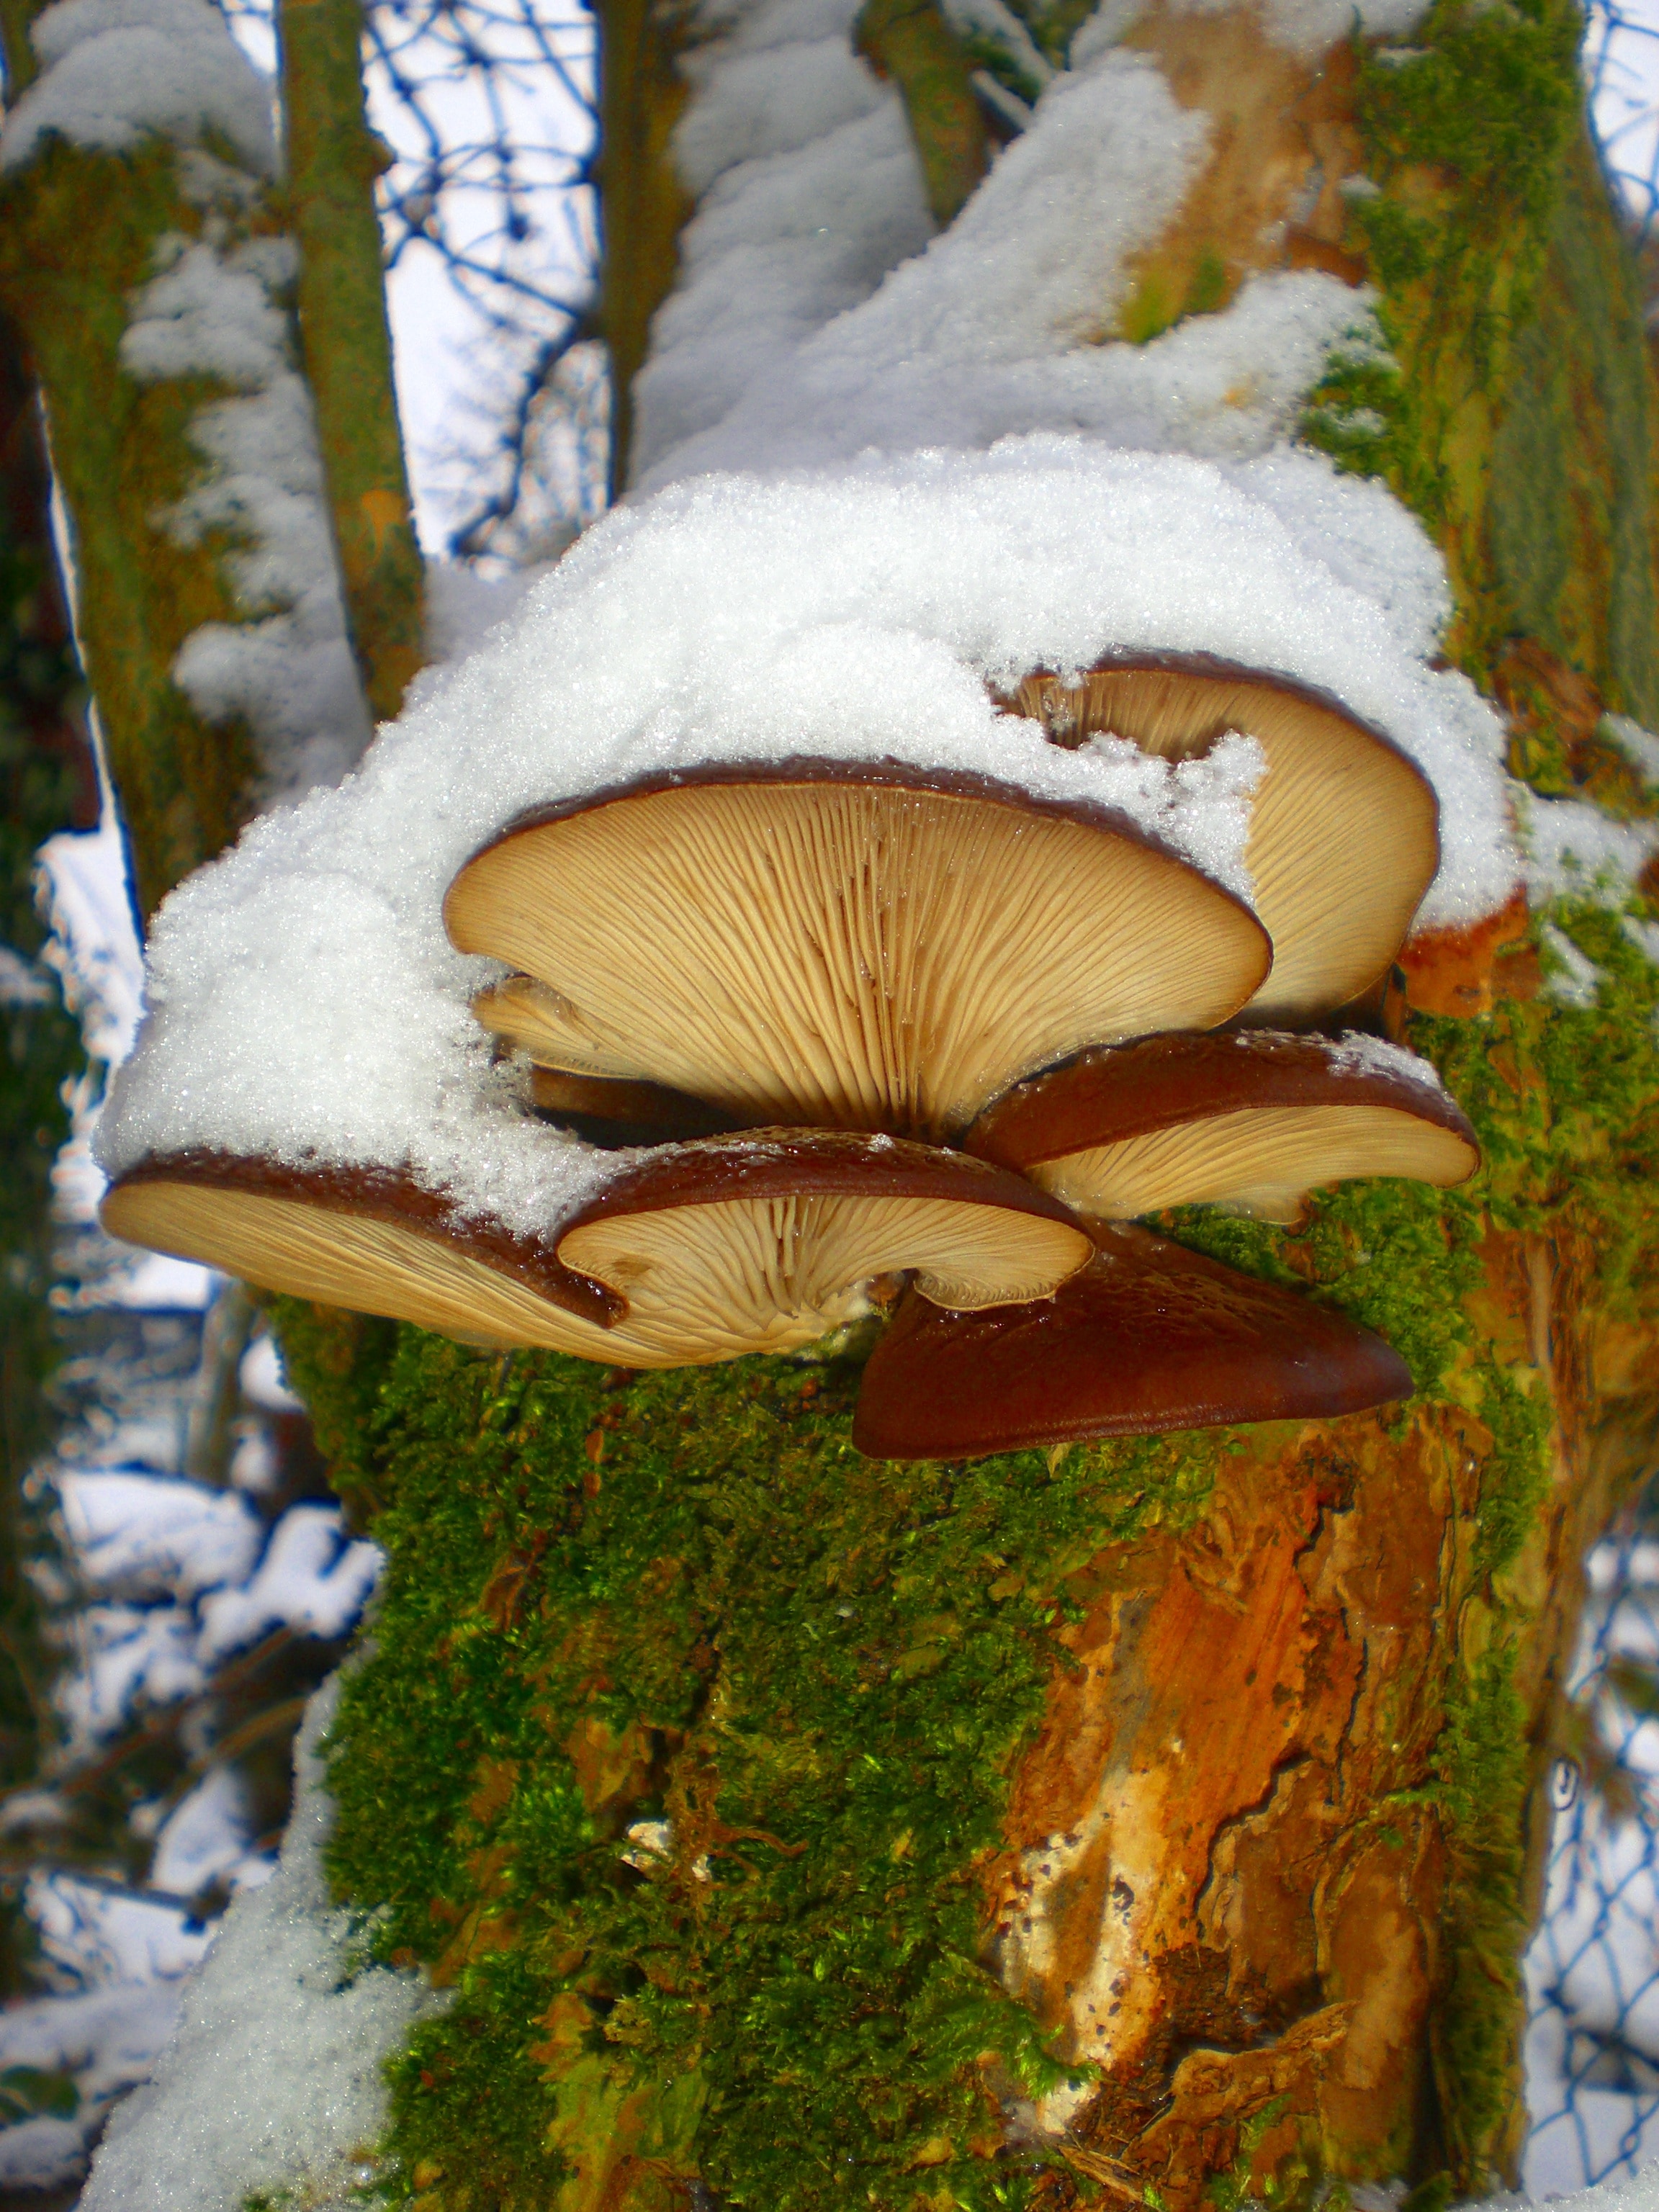 mushroom plant on tree trunk